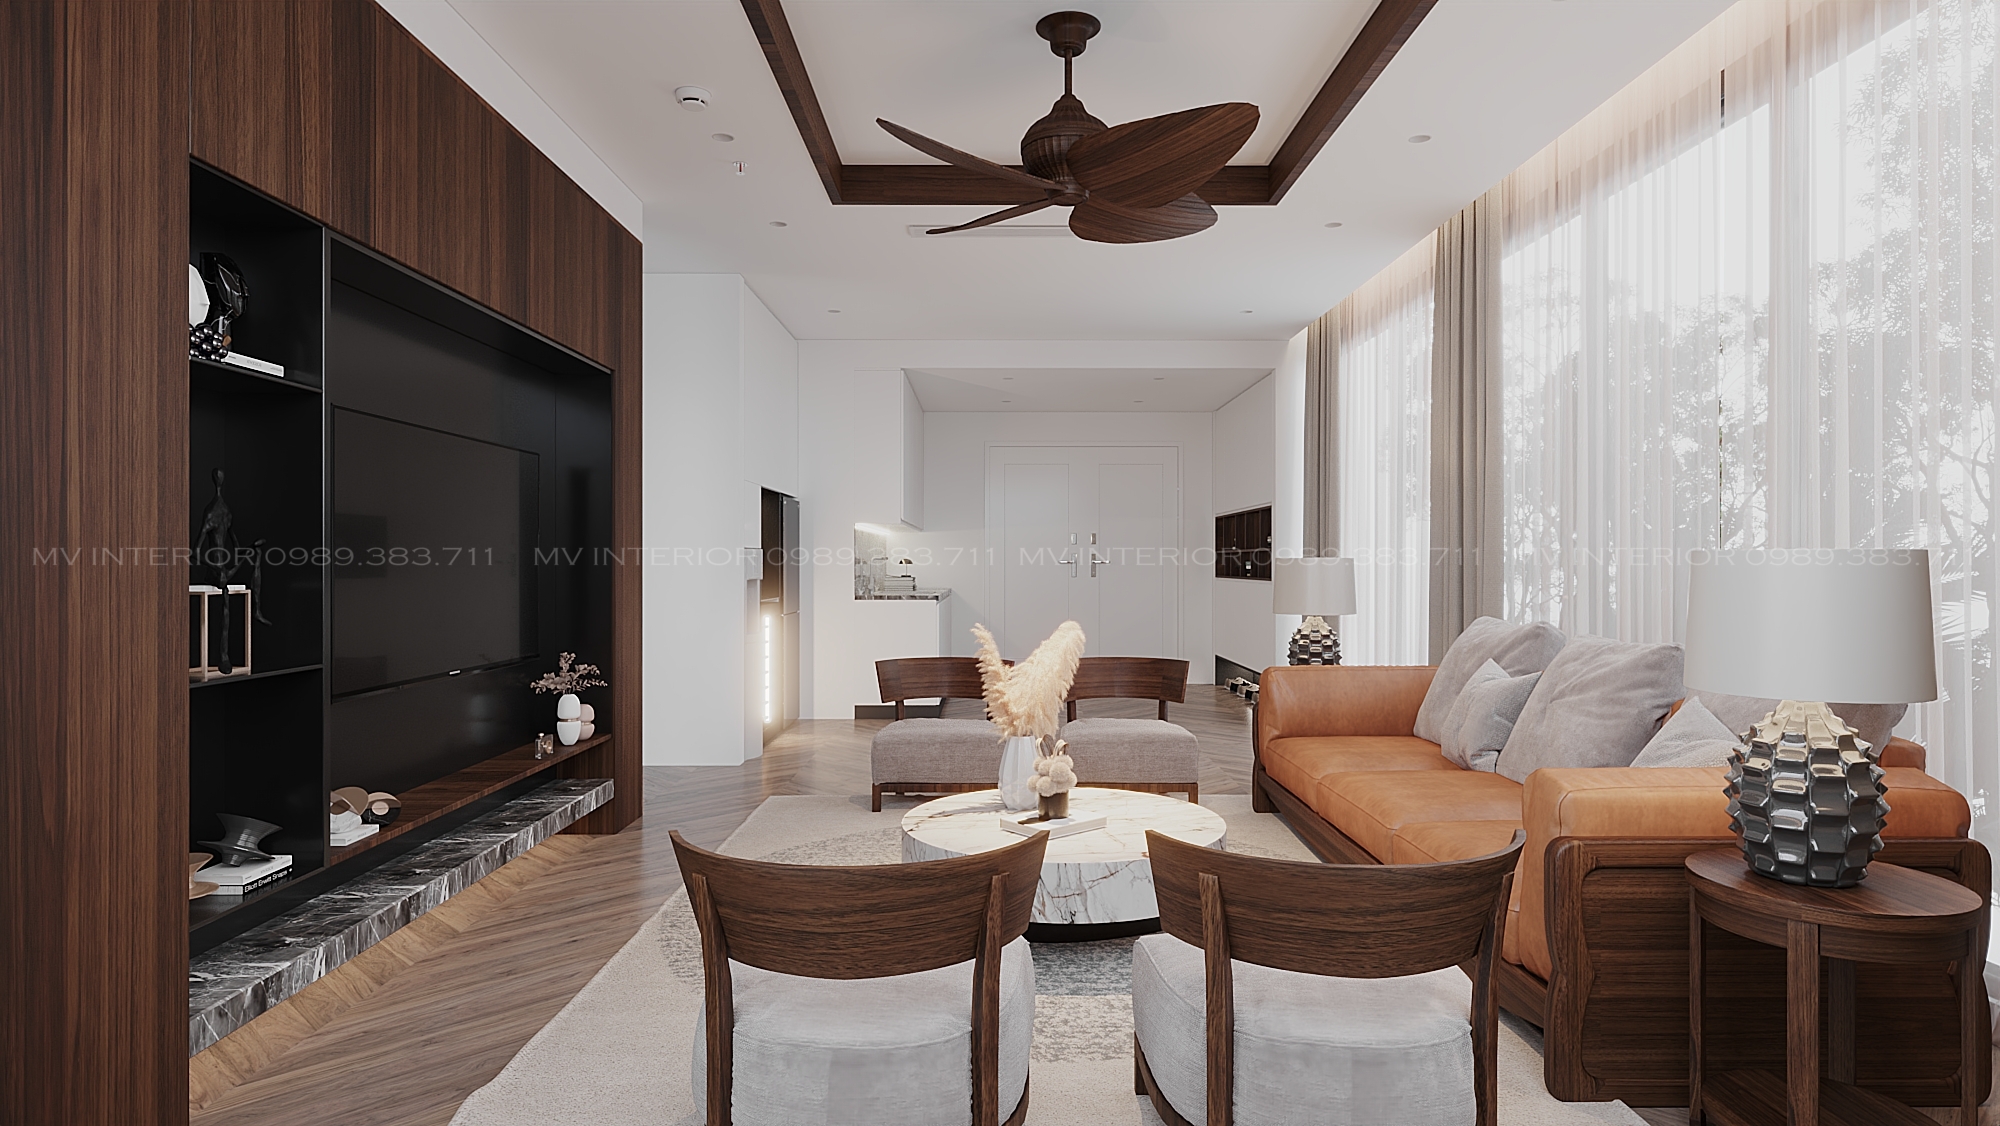 Thiết kế nội thất Resort tại Hà Nội phòng nghỉ dưỡng -Hòa bình 1634474776 3